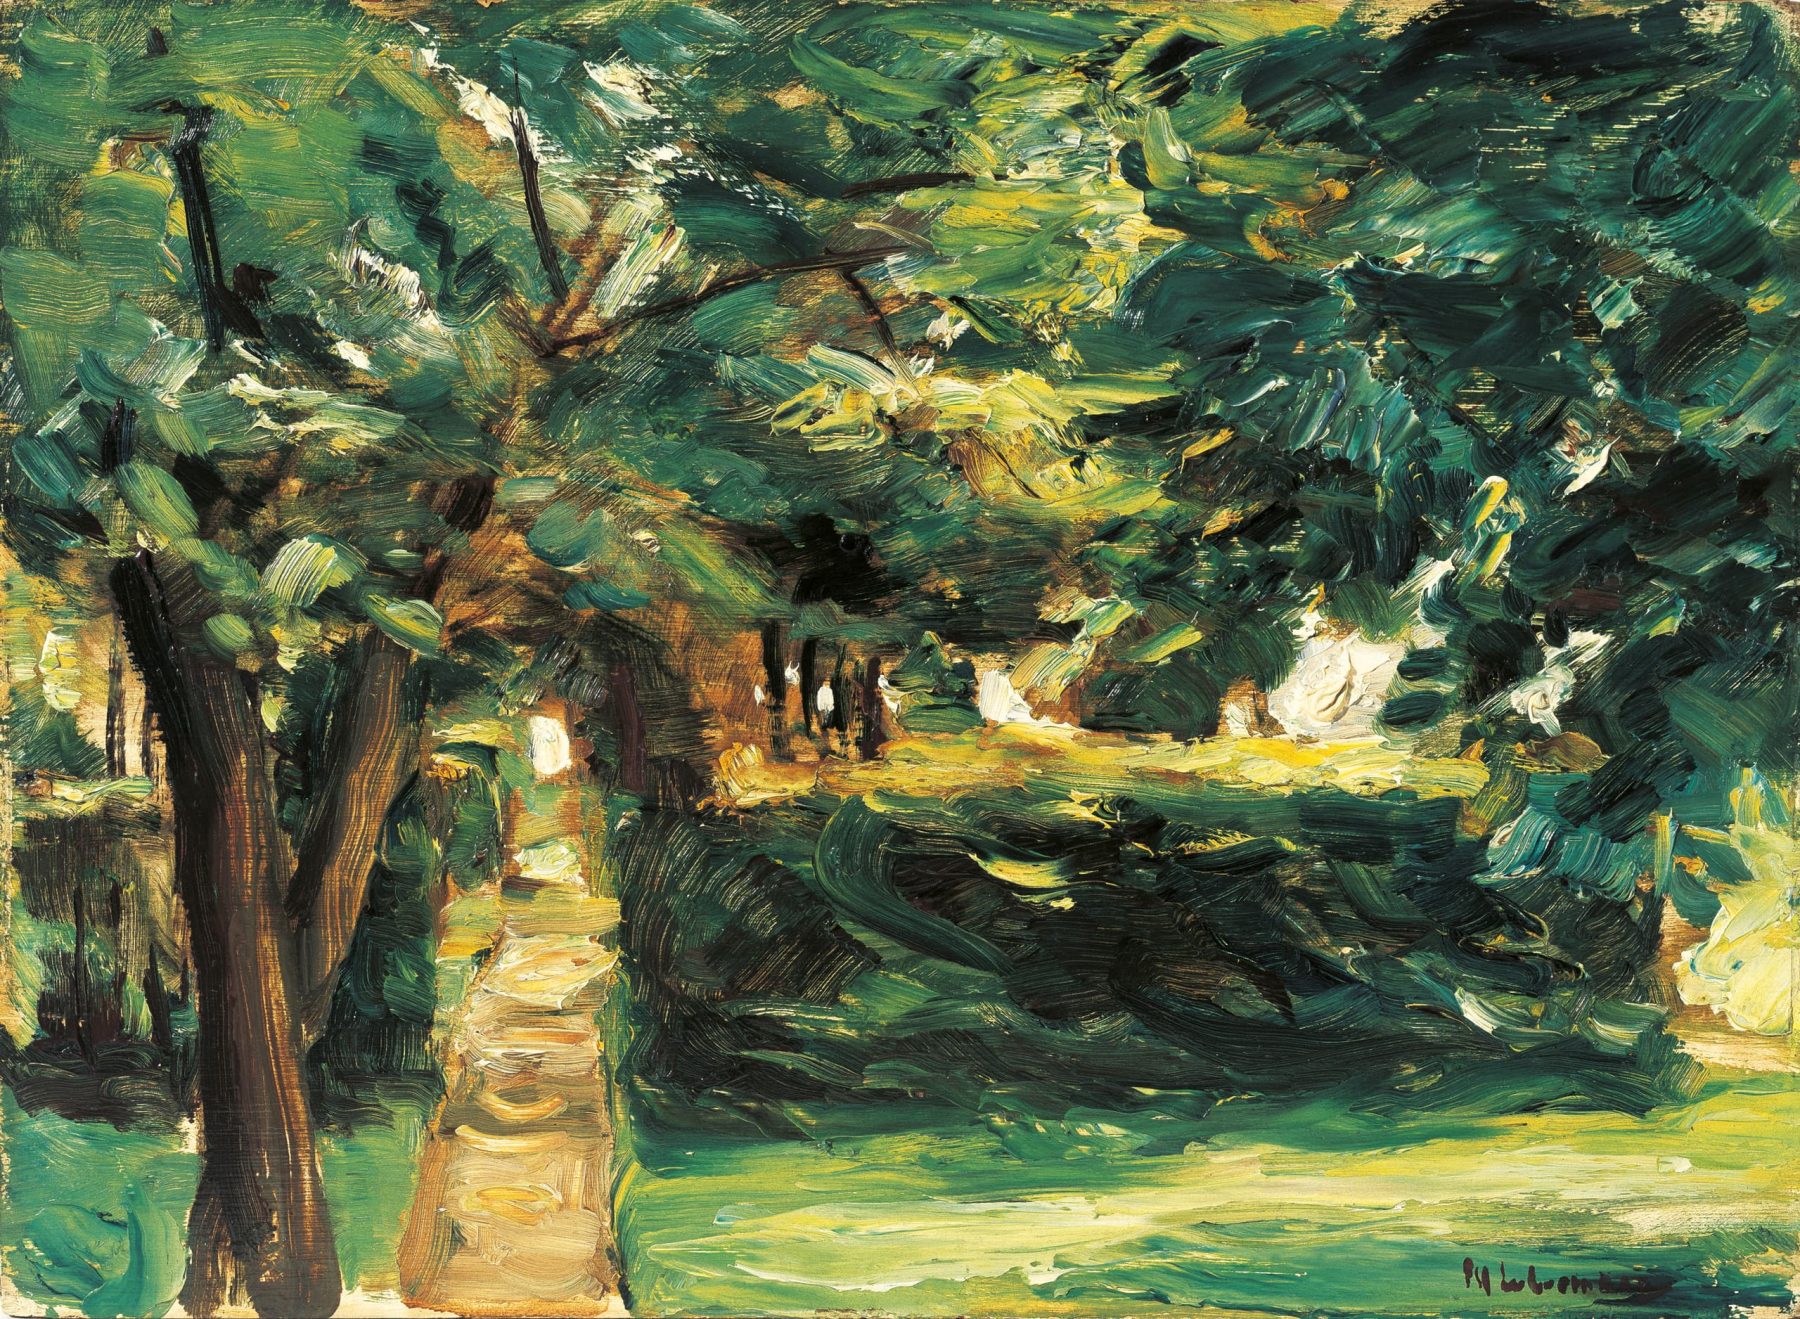 Gemälde des Gartens der Liebermann-Villa mit einem Baum am linken Bildrand, mittig ein Weg und eine Hecke.